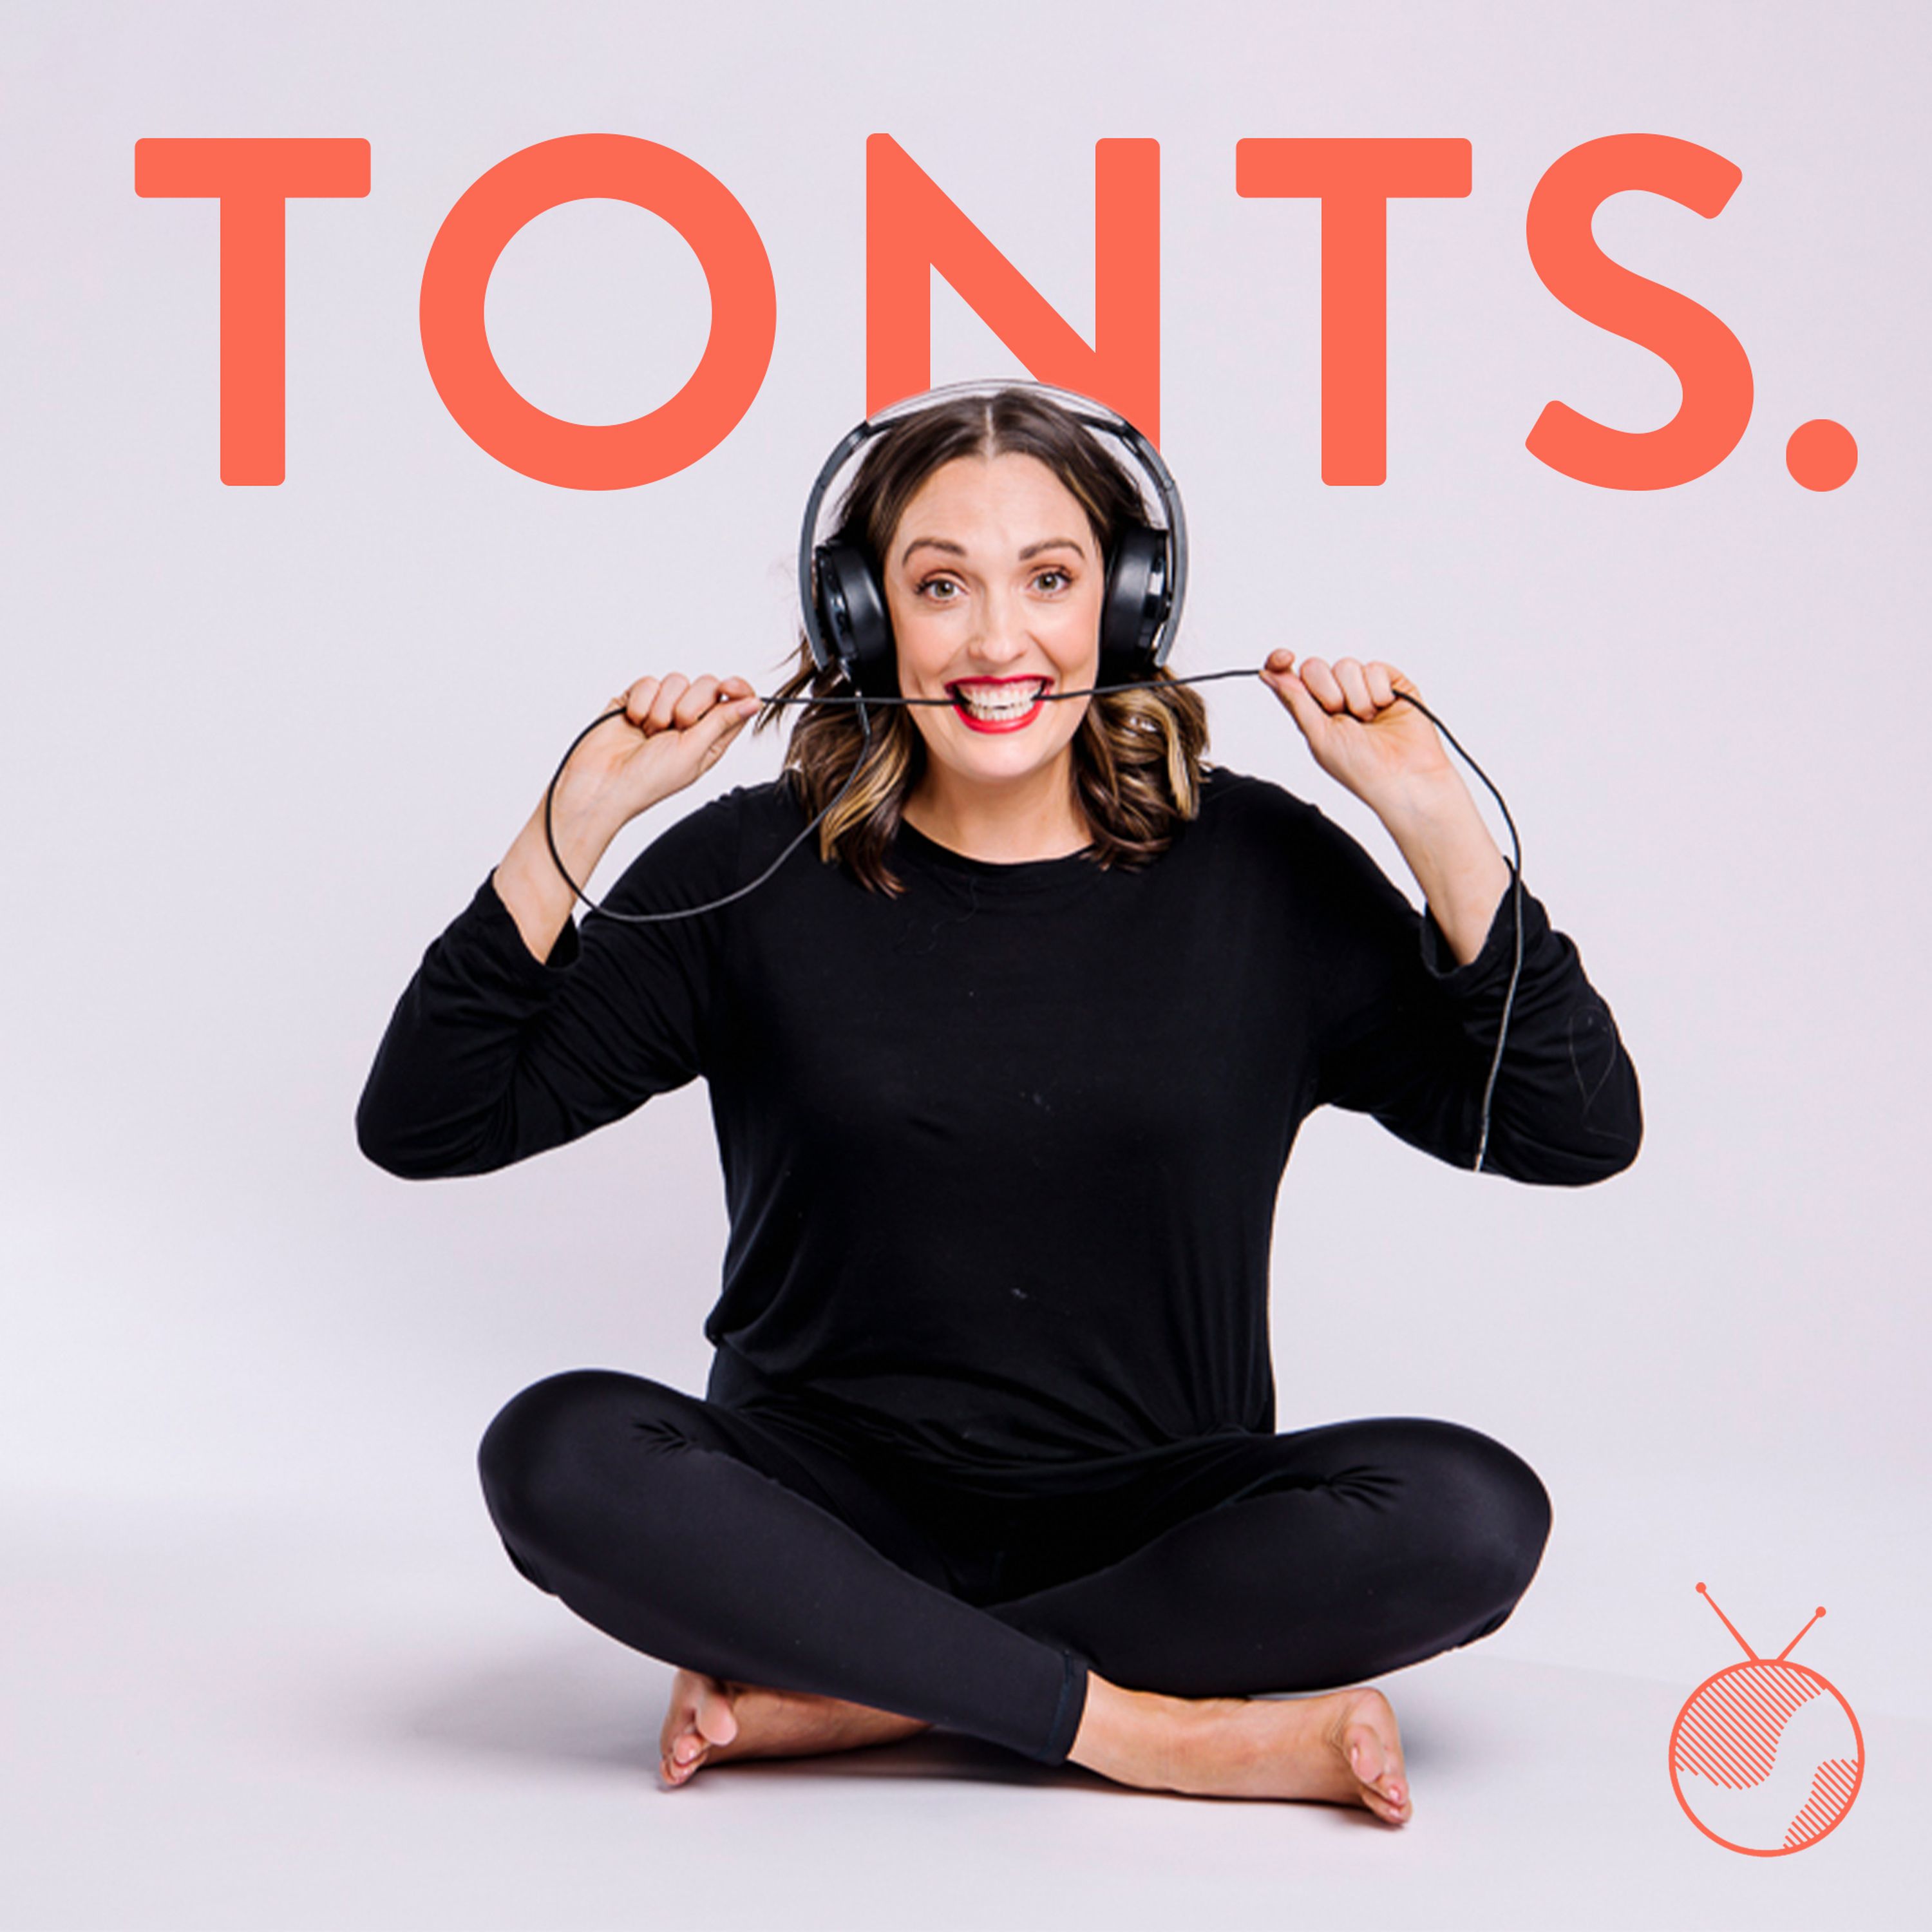 JMTT presents TONTS. A new podcast premiering June 15th